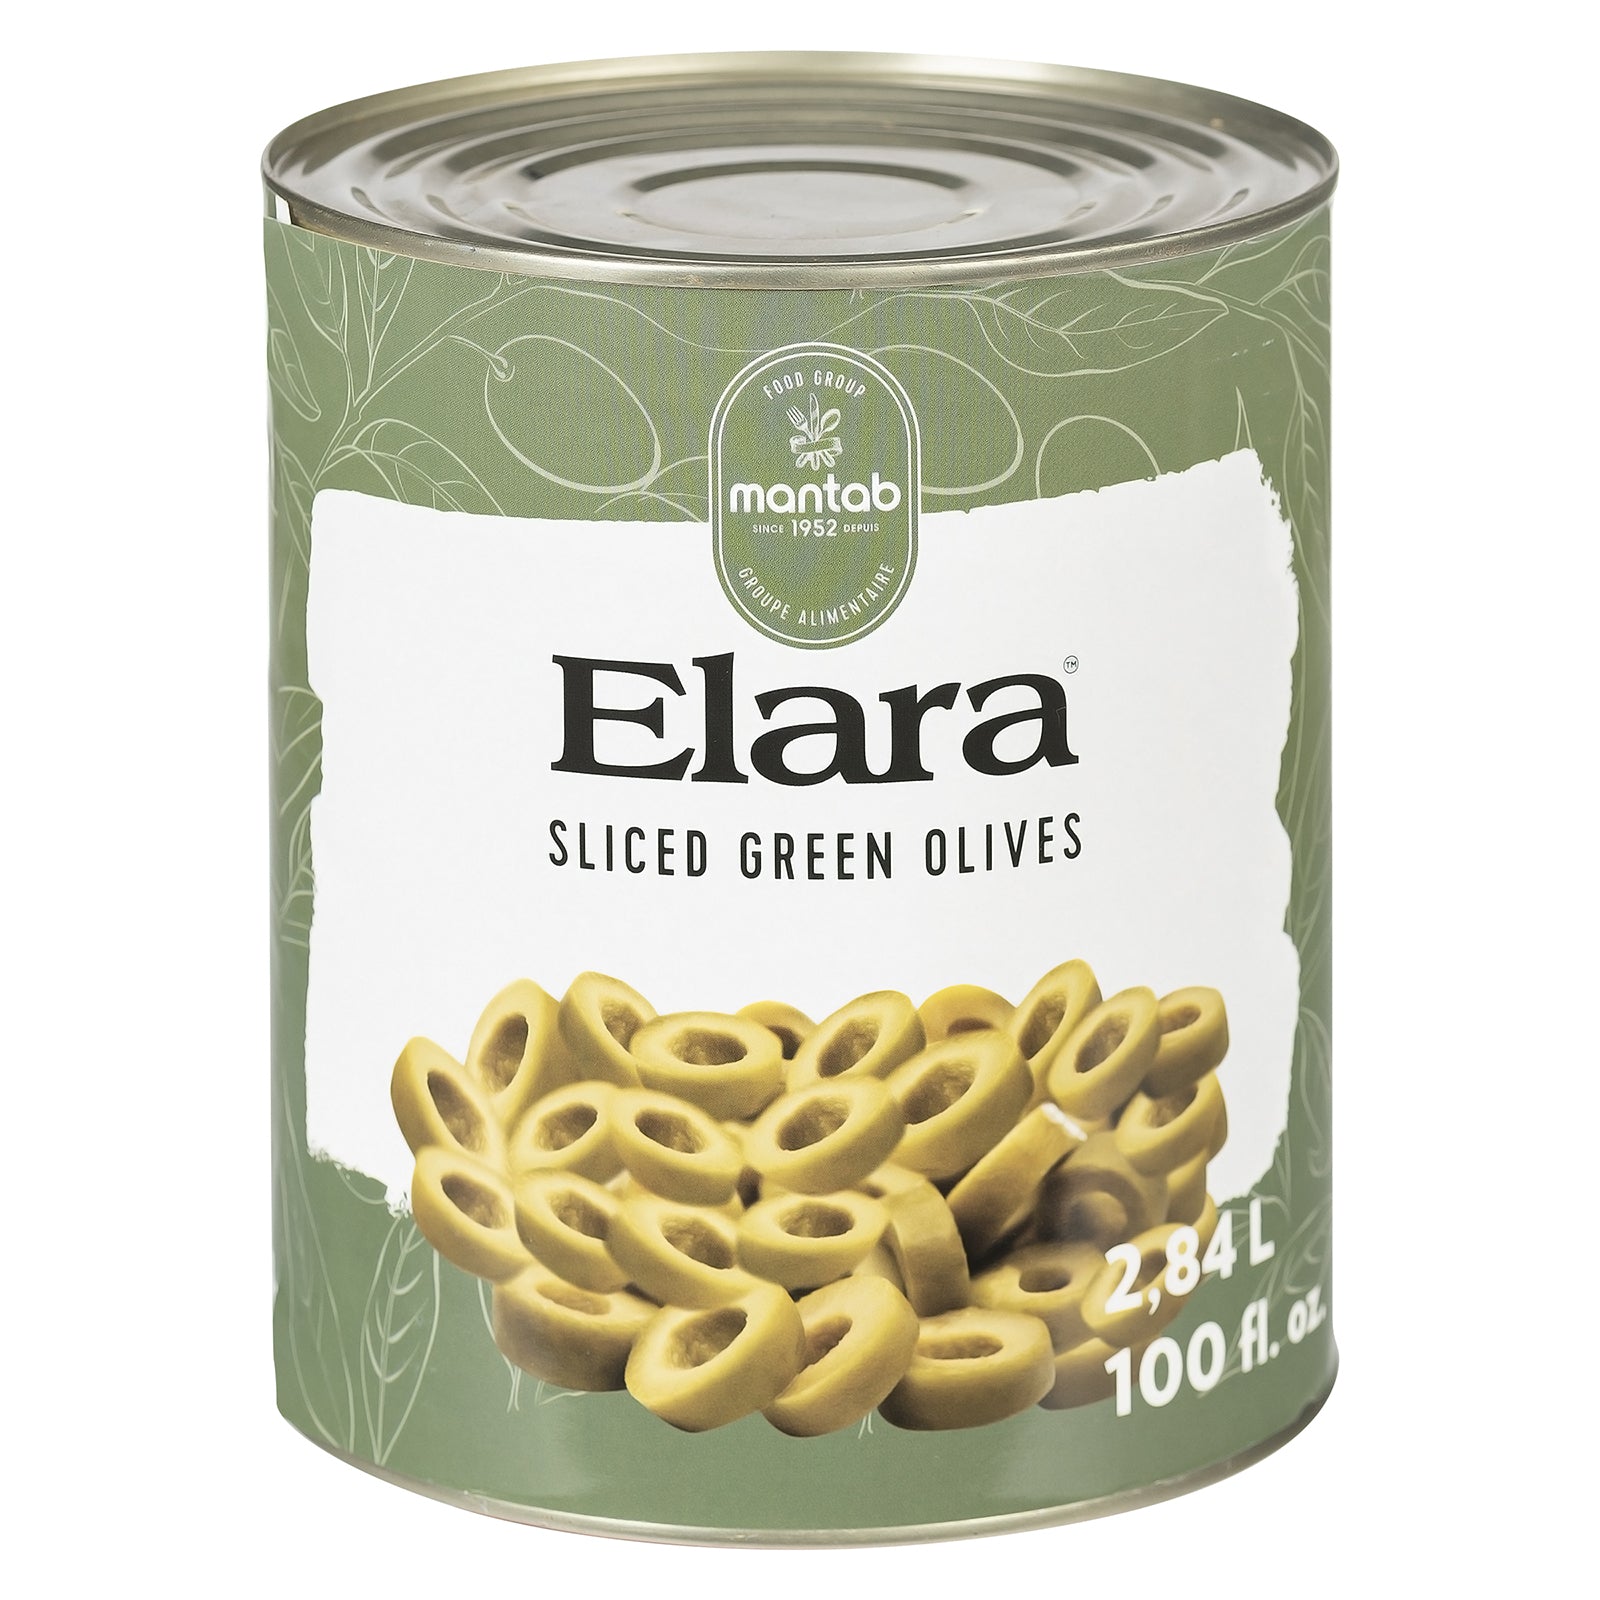 ELARA Sliced green olives